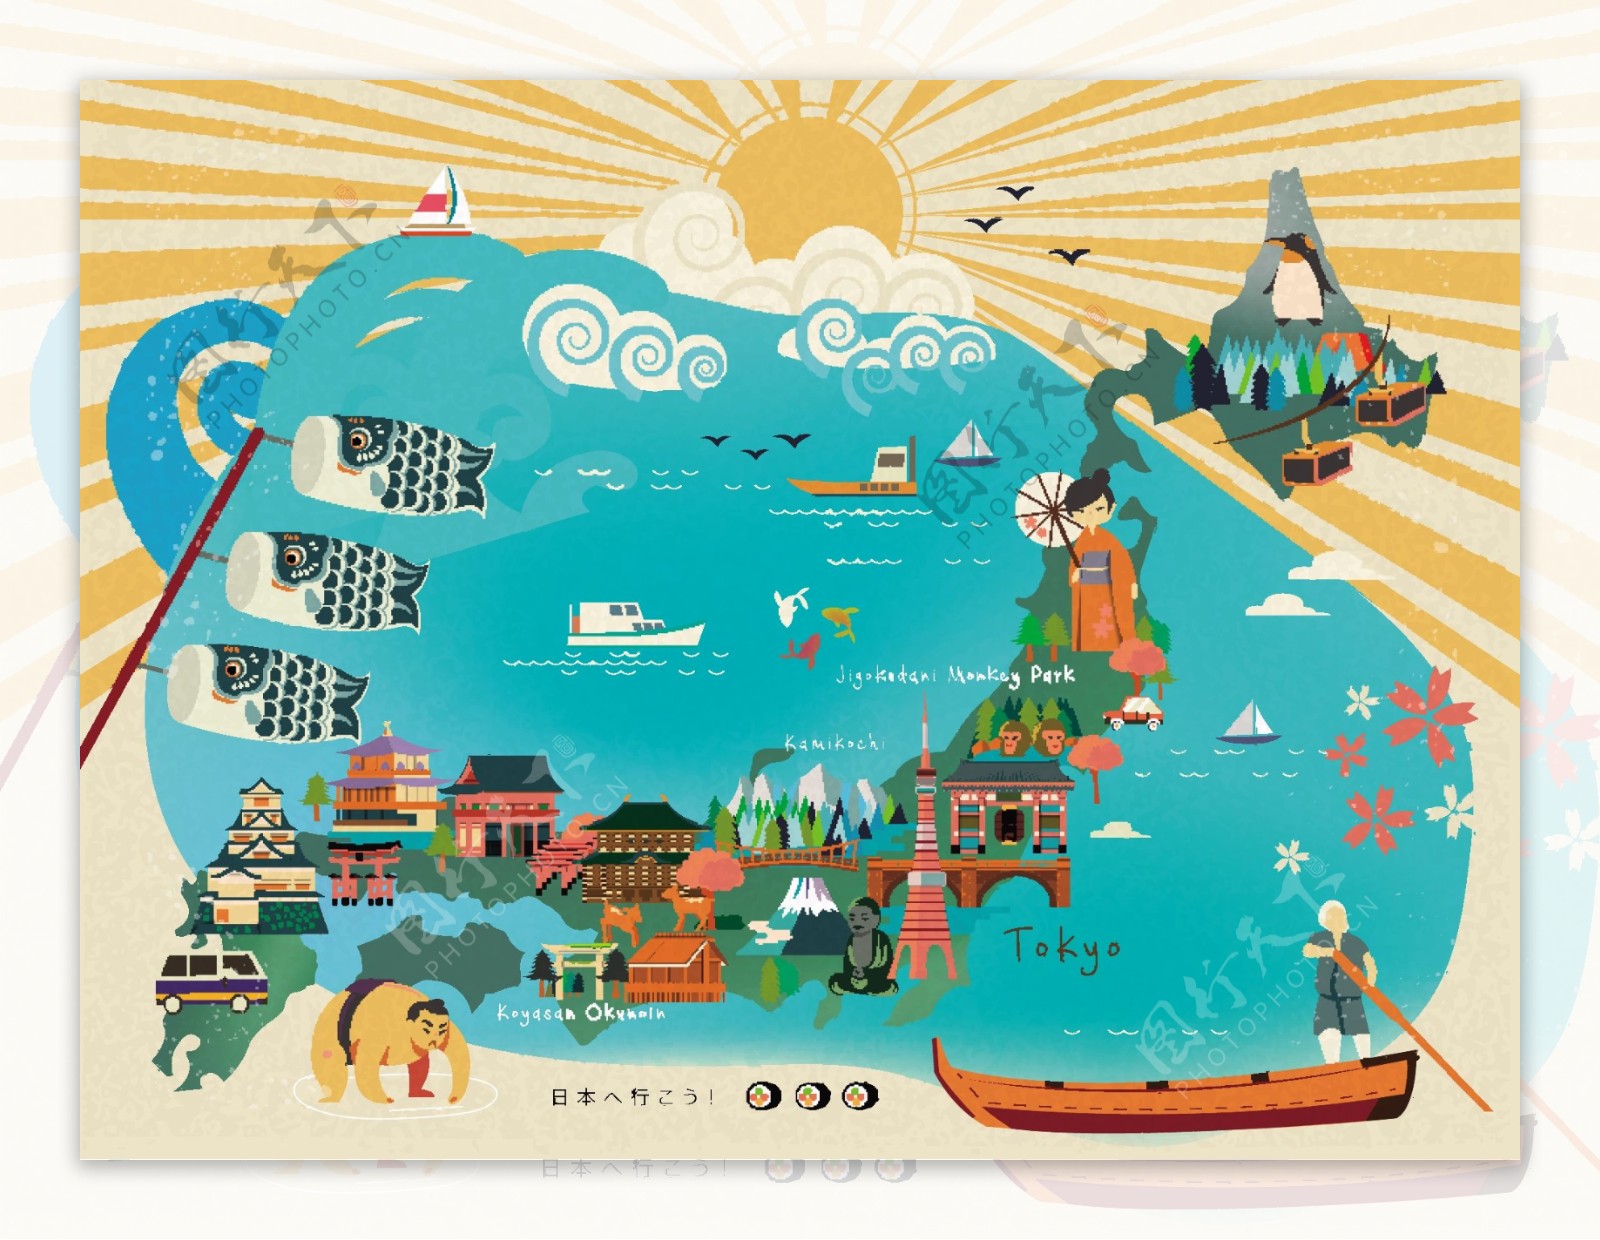 日本旅游创意装饰地图矢量素材